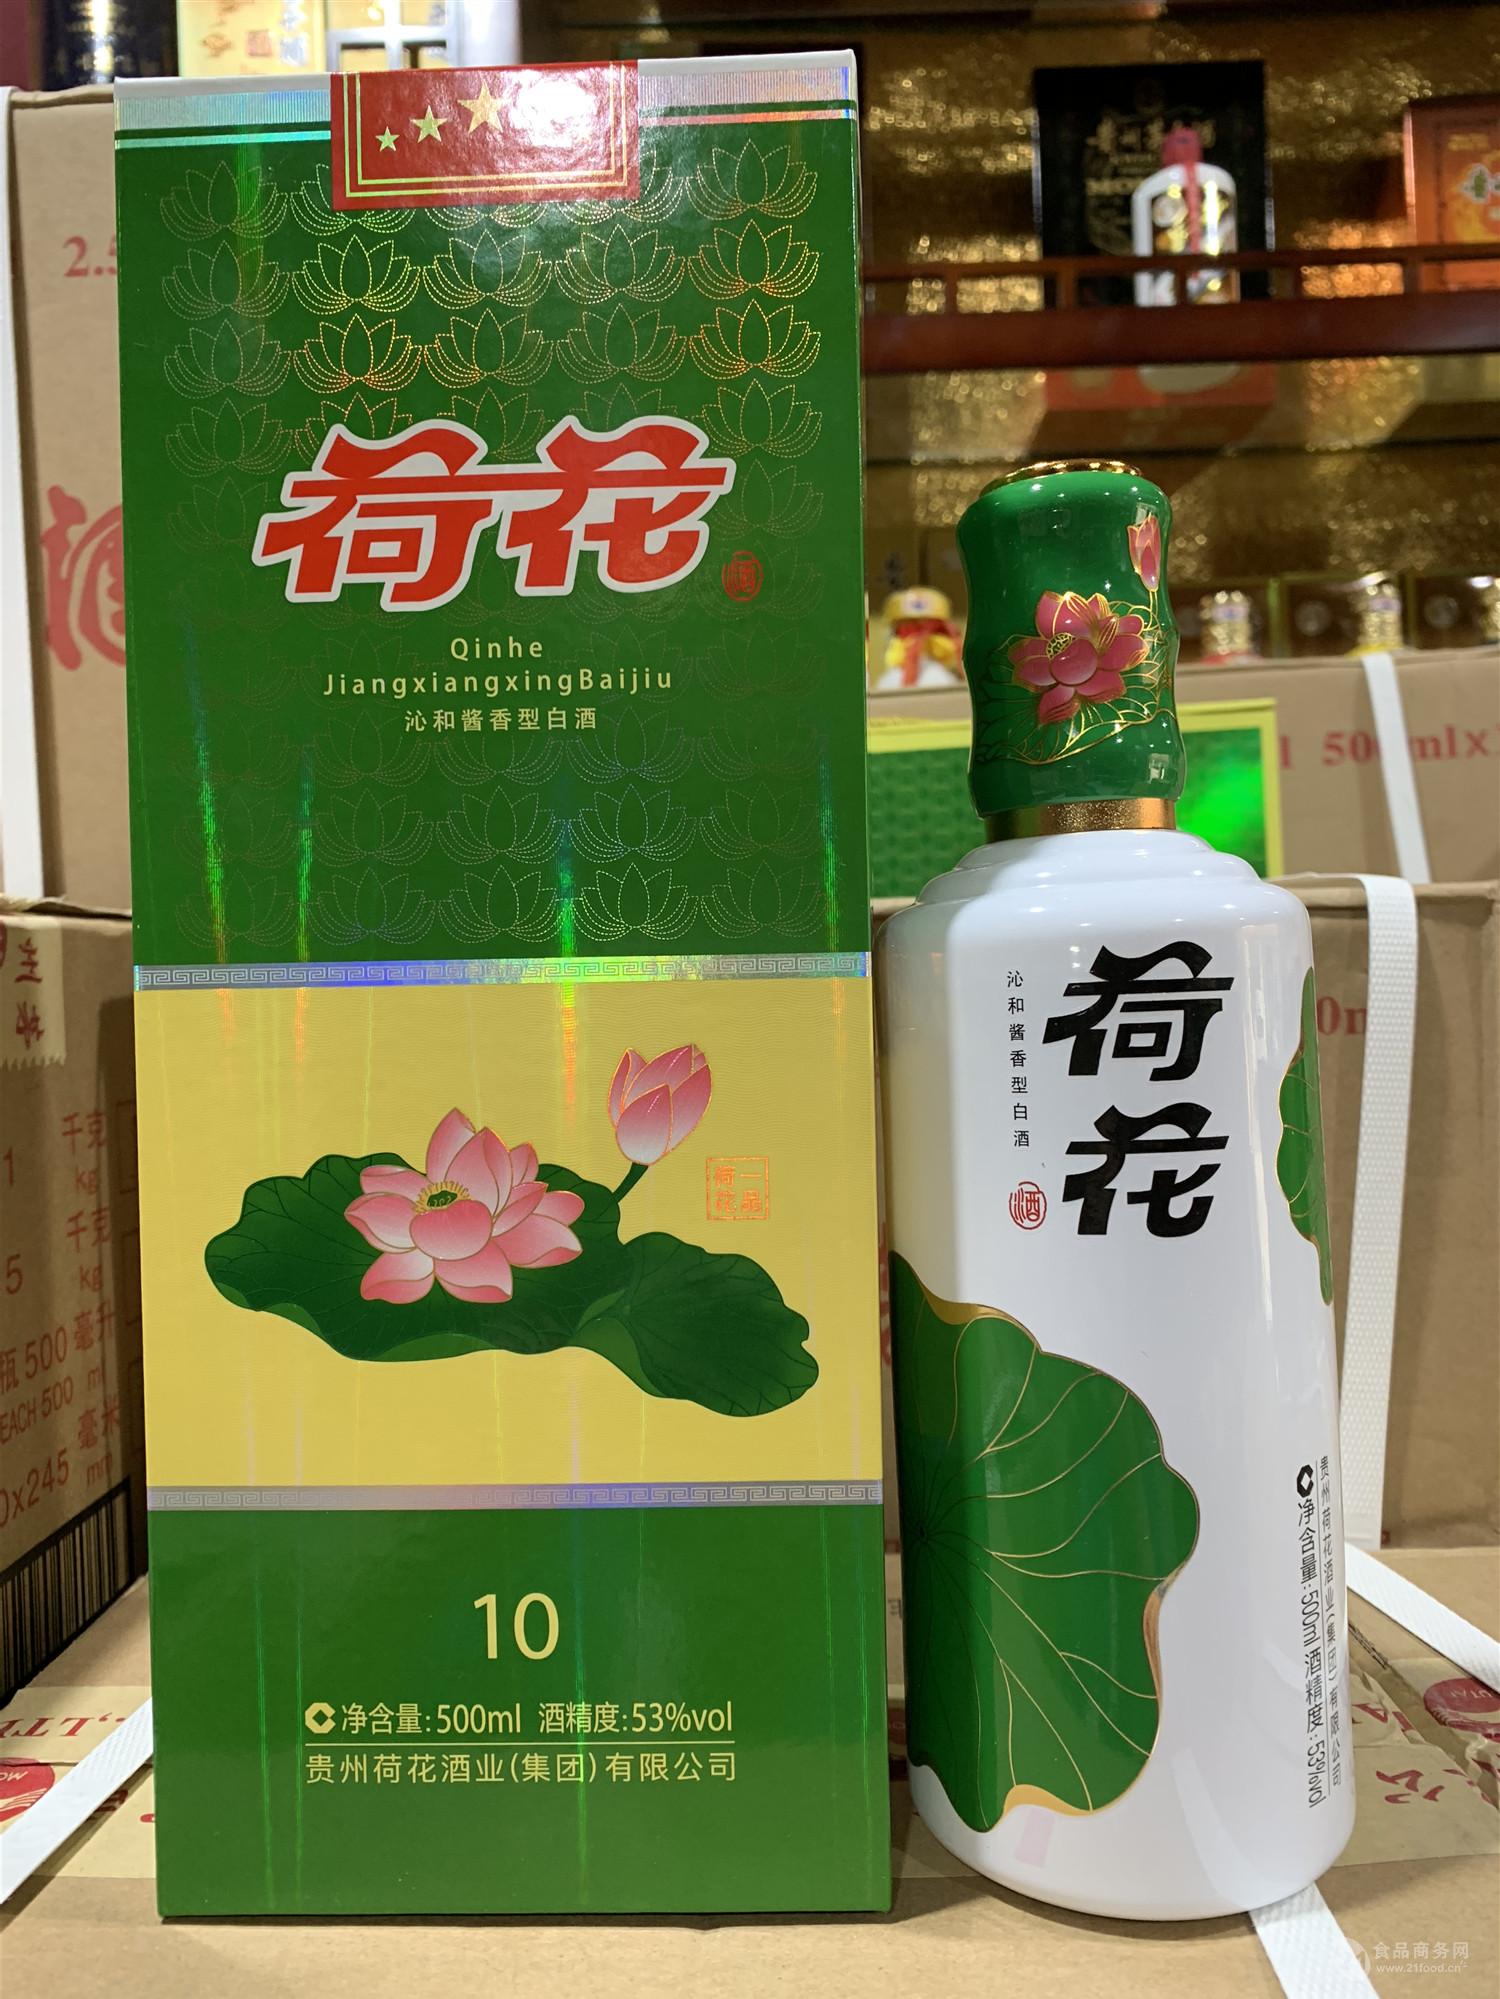 口里酥-中国名优酒-图片